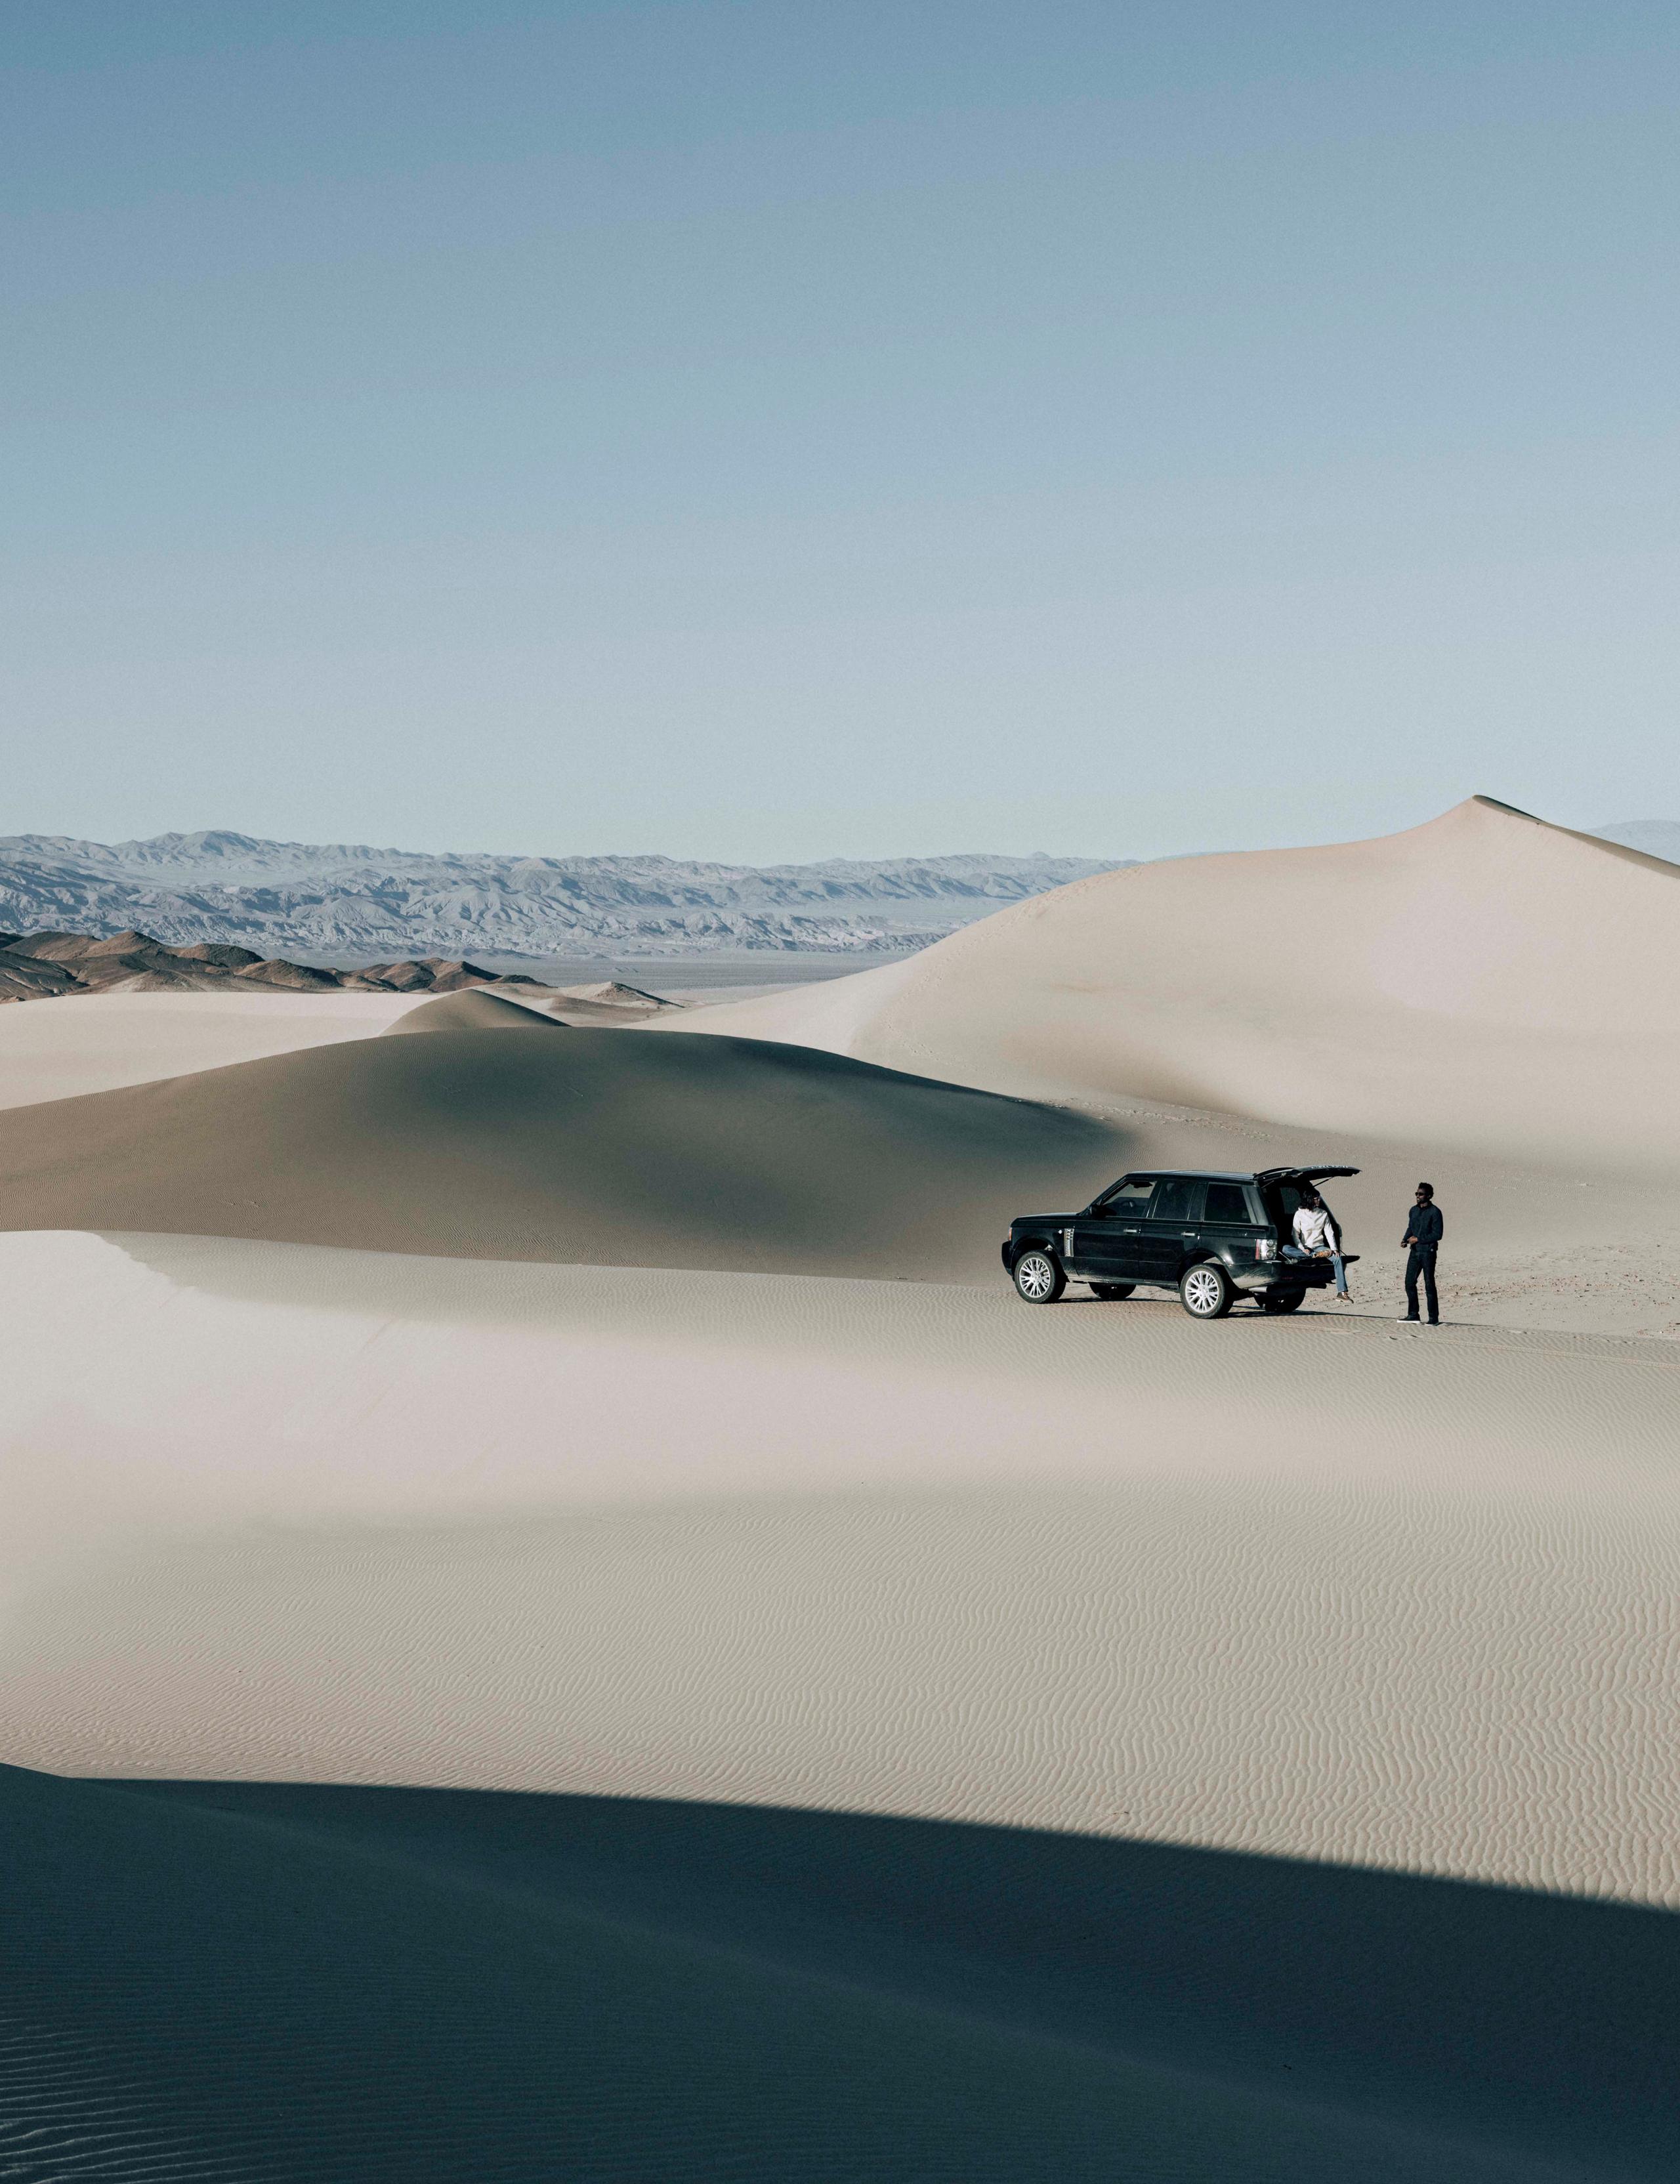 A SUV on sand dunes